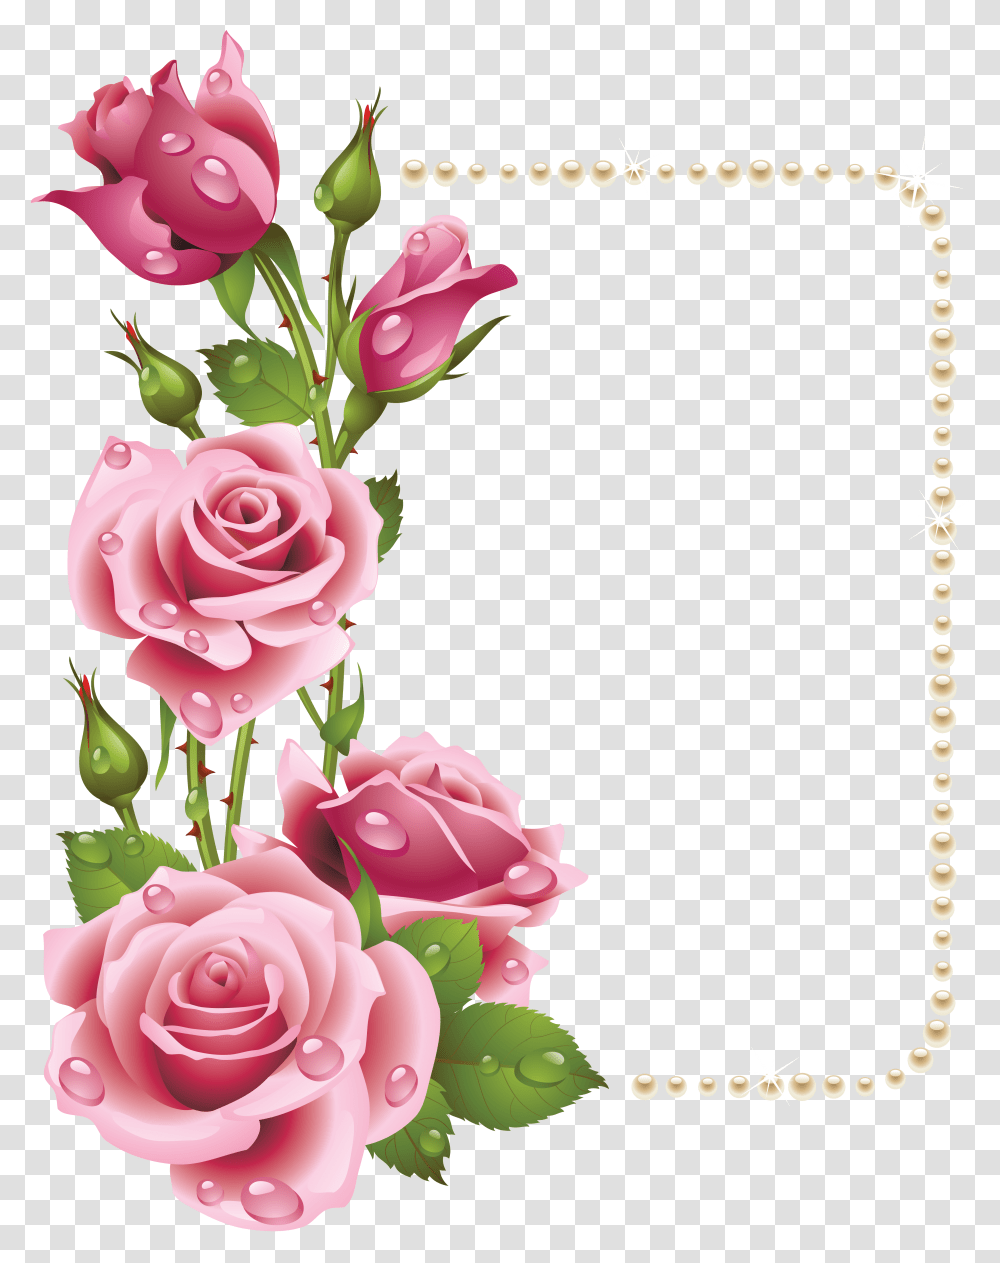 Pink Rose Border Large Frame With Pink Rose Frame, Plant, Flower, Blossom, Graphics Transparent Png